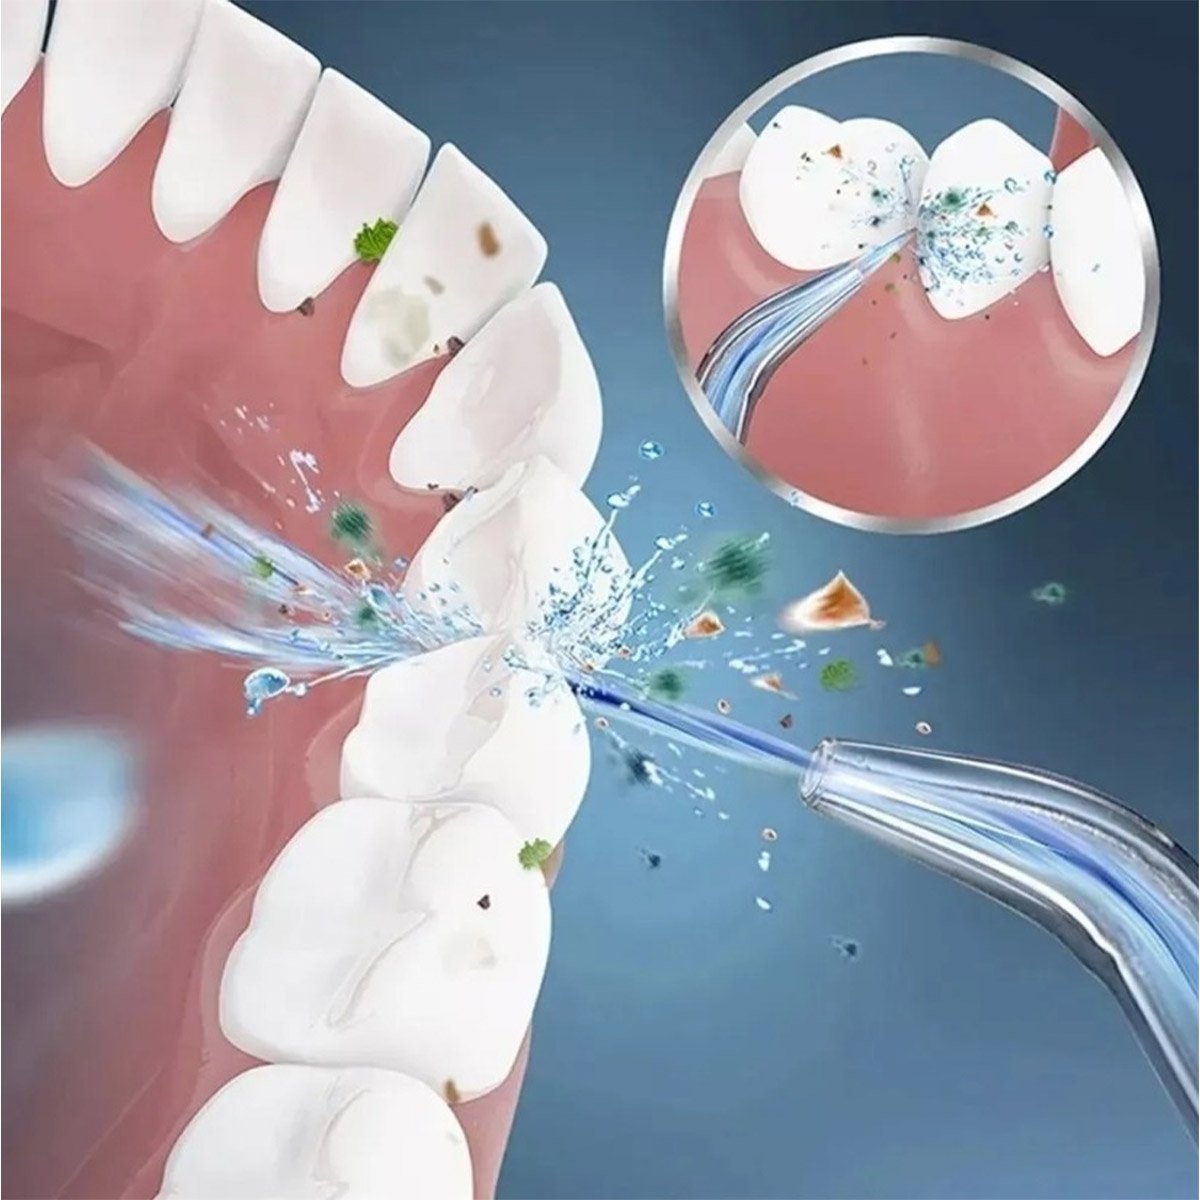 Irrigador Oral Jato de Limpeza Dental Eletrico Escova Dentes Gengiva Lingua Higiene Bucal Aparelho O - 4